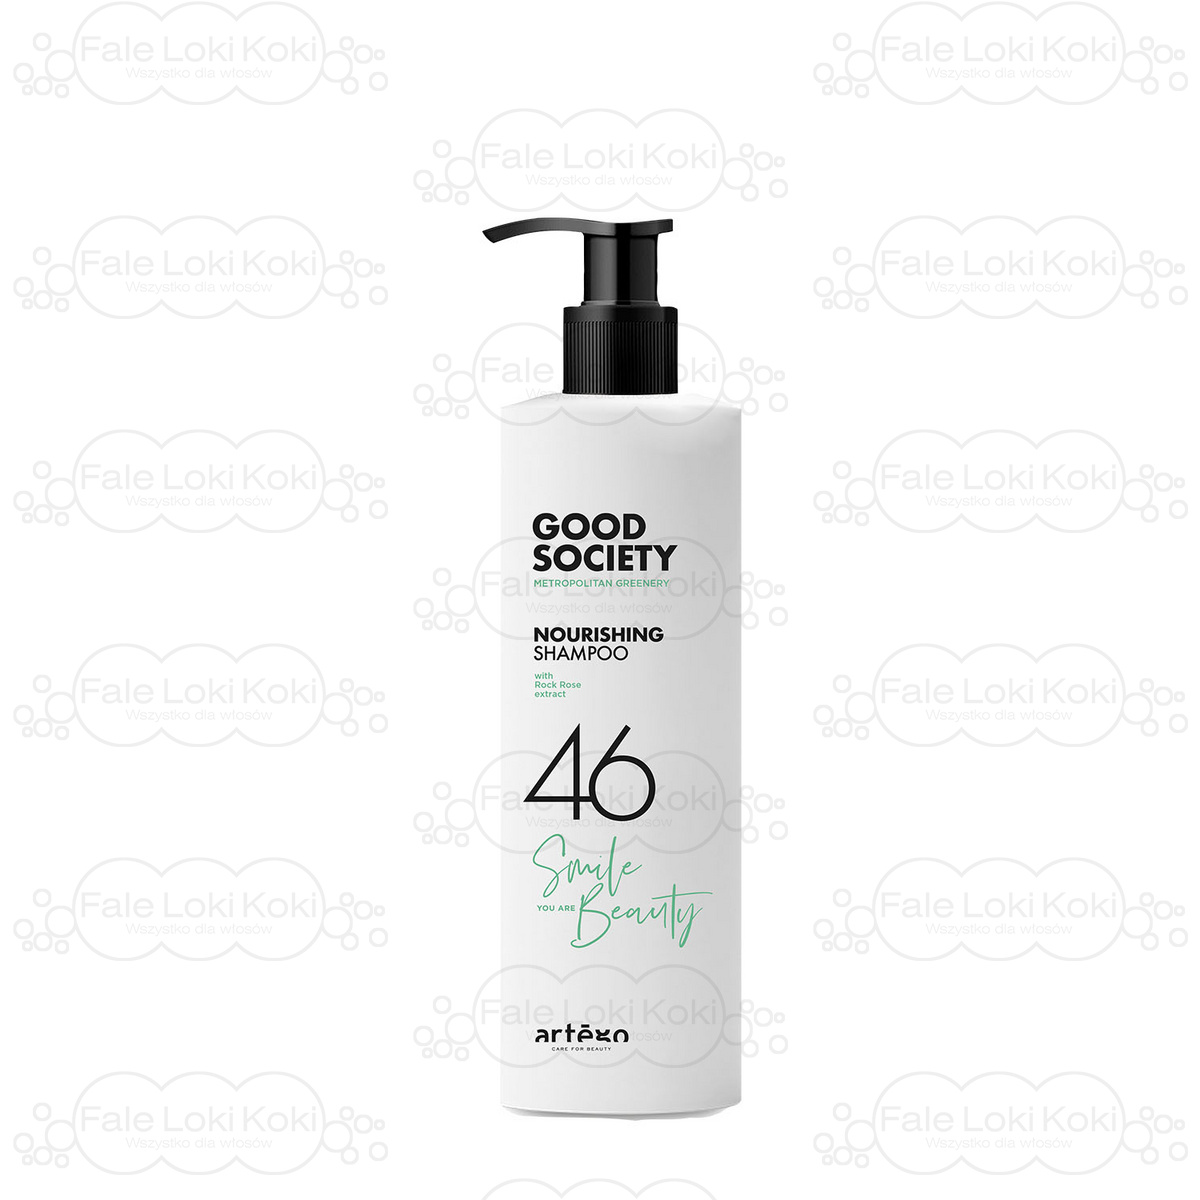 ARTEGO GOOD SOCIETY szampon regenerujący z kwasem hialuronowym 46 NOURISHING SHAMPOO 1000 ml